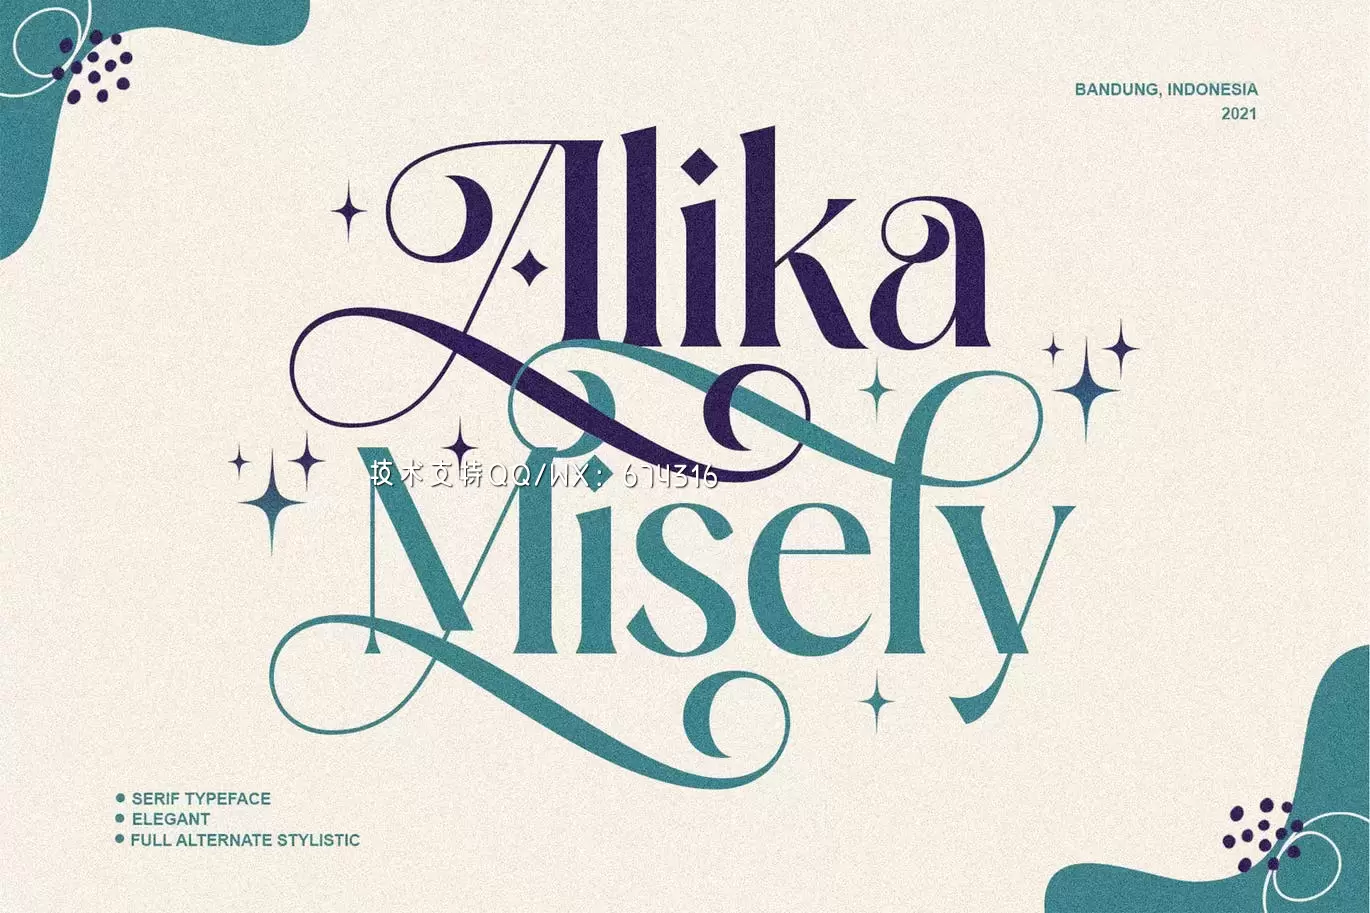 高品质的Alika misely英文字体插图